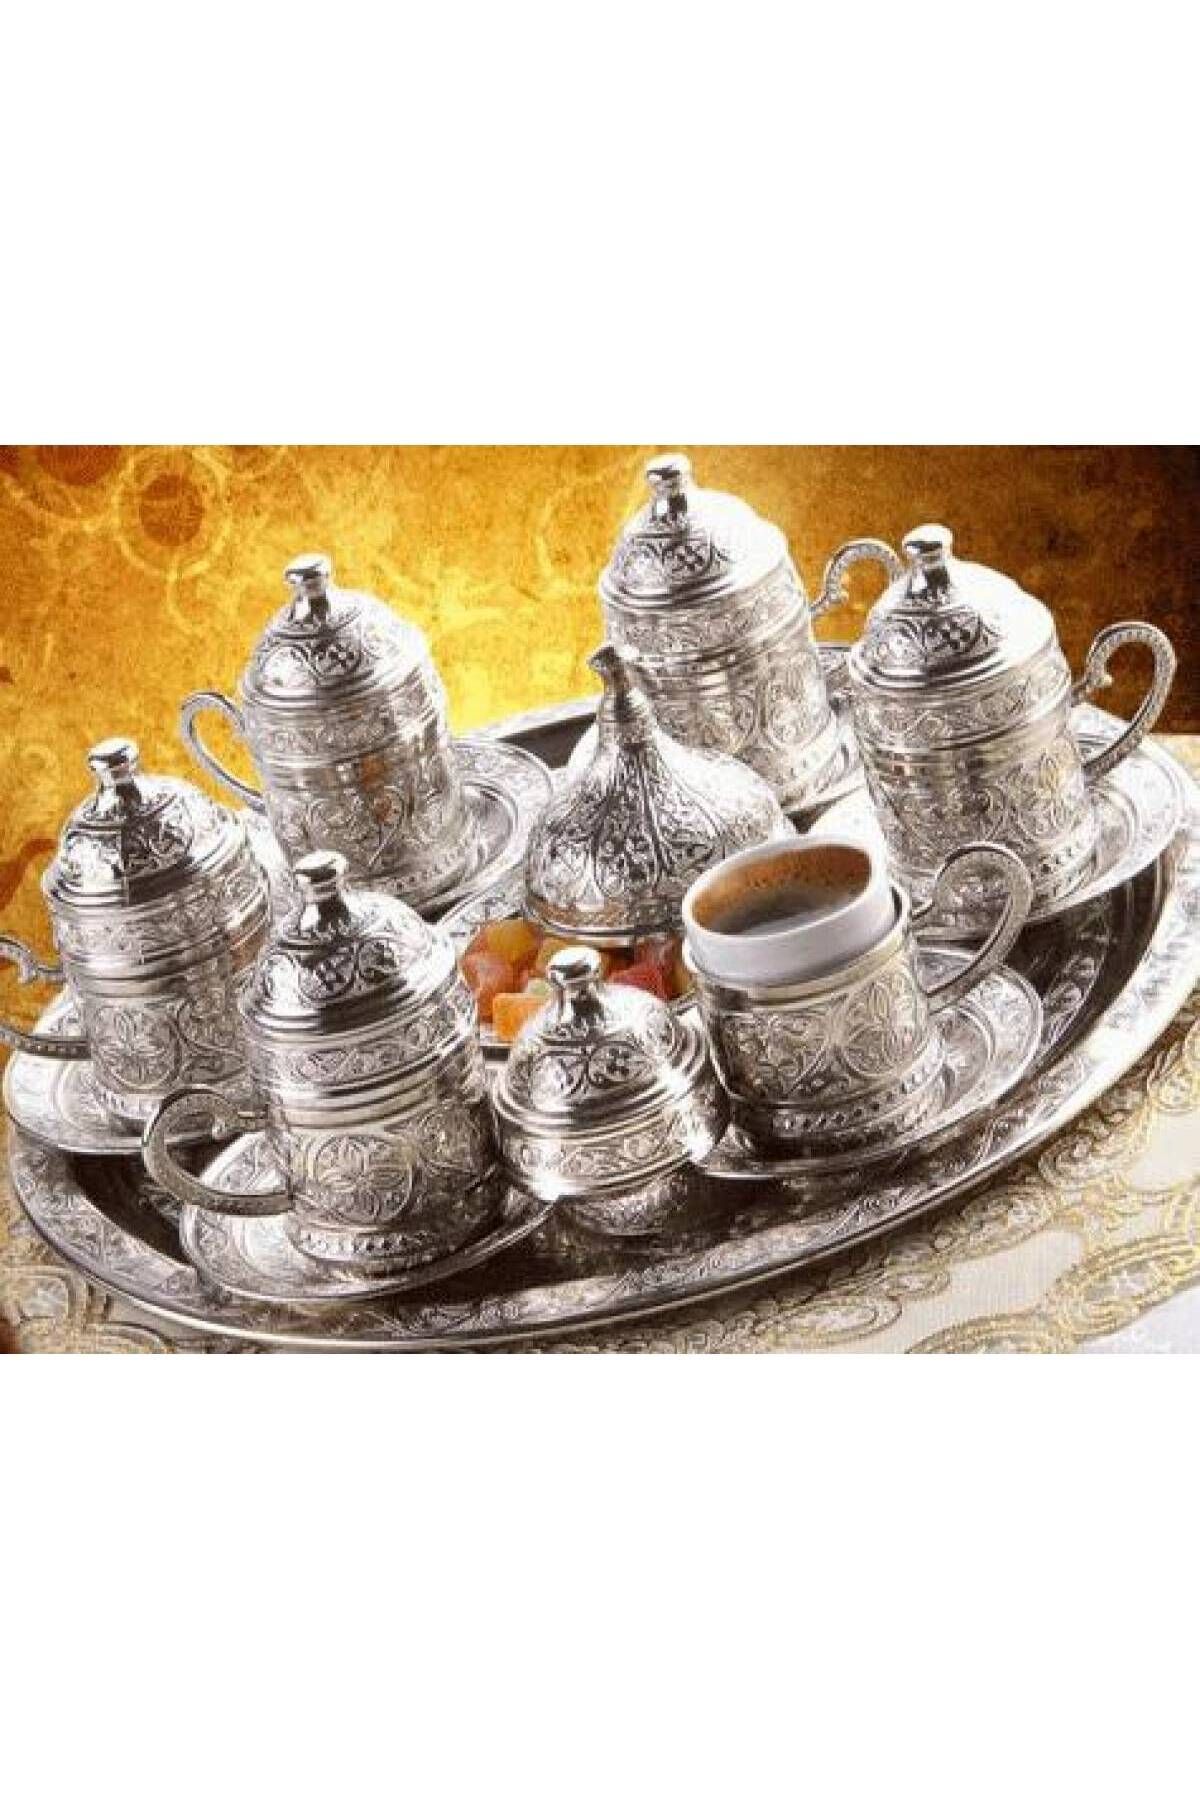 ÇERÇİCİ Osmanlı Motifli 6 Kişilik Türk Kahve Seti ( 3 Renk )